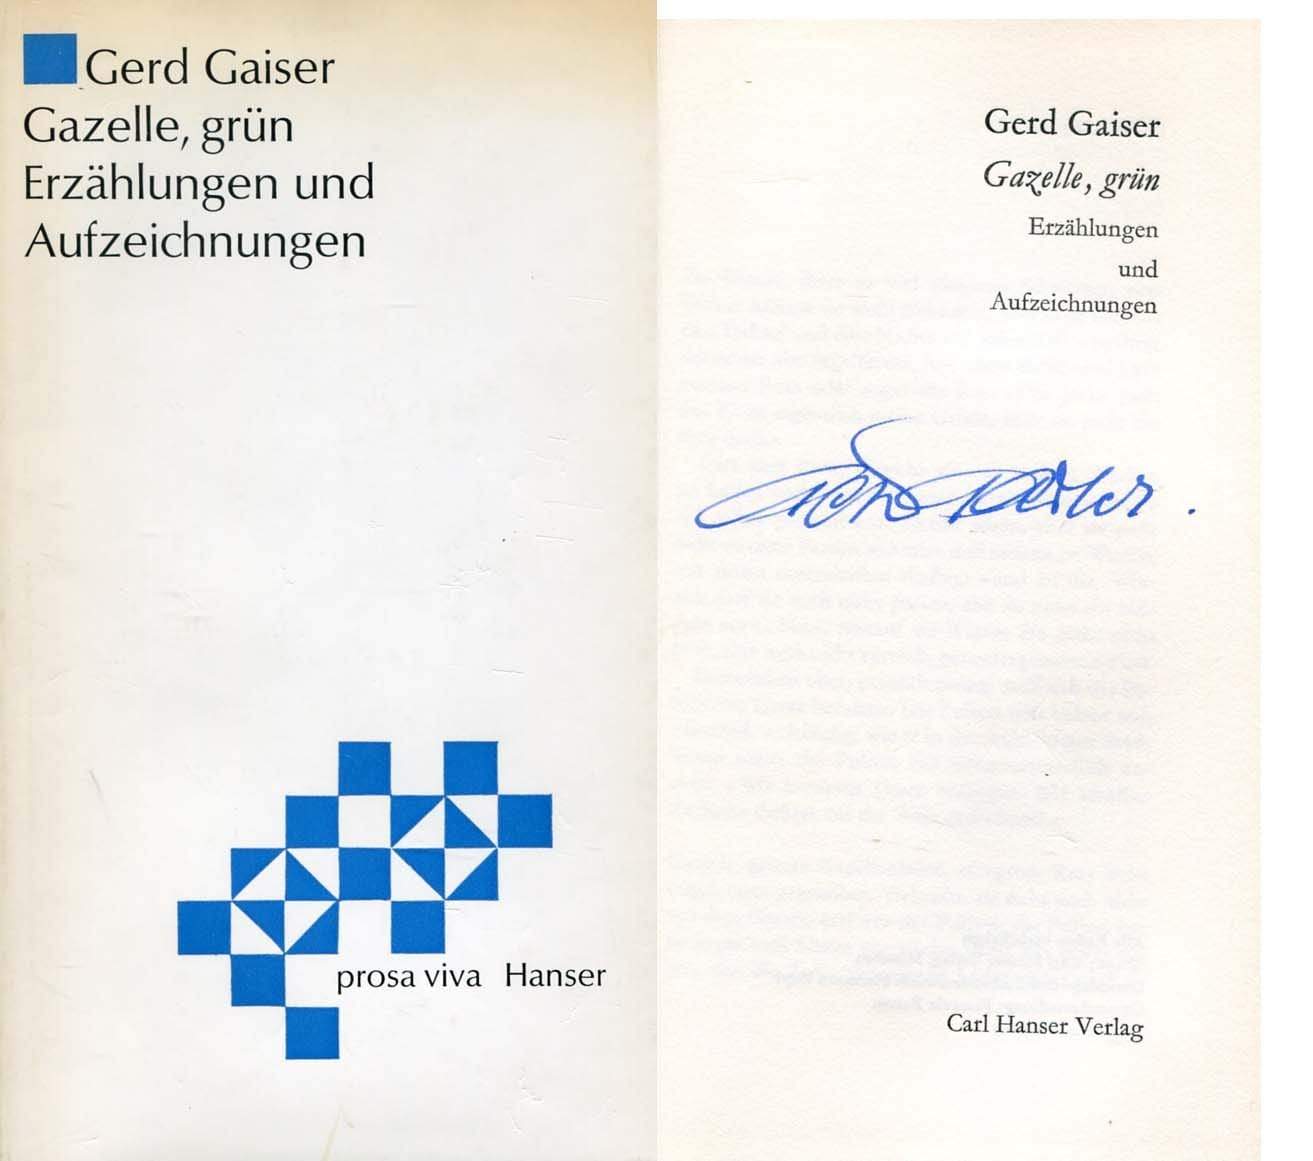 Gaiser, Gerd autograph